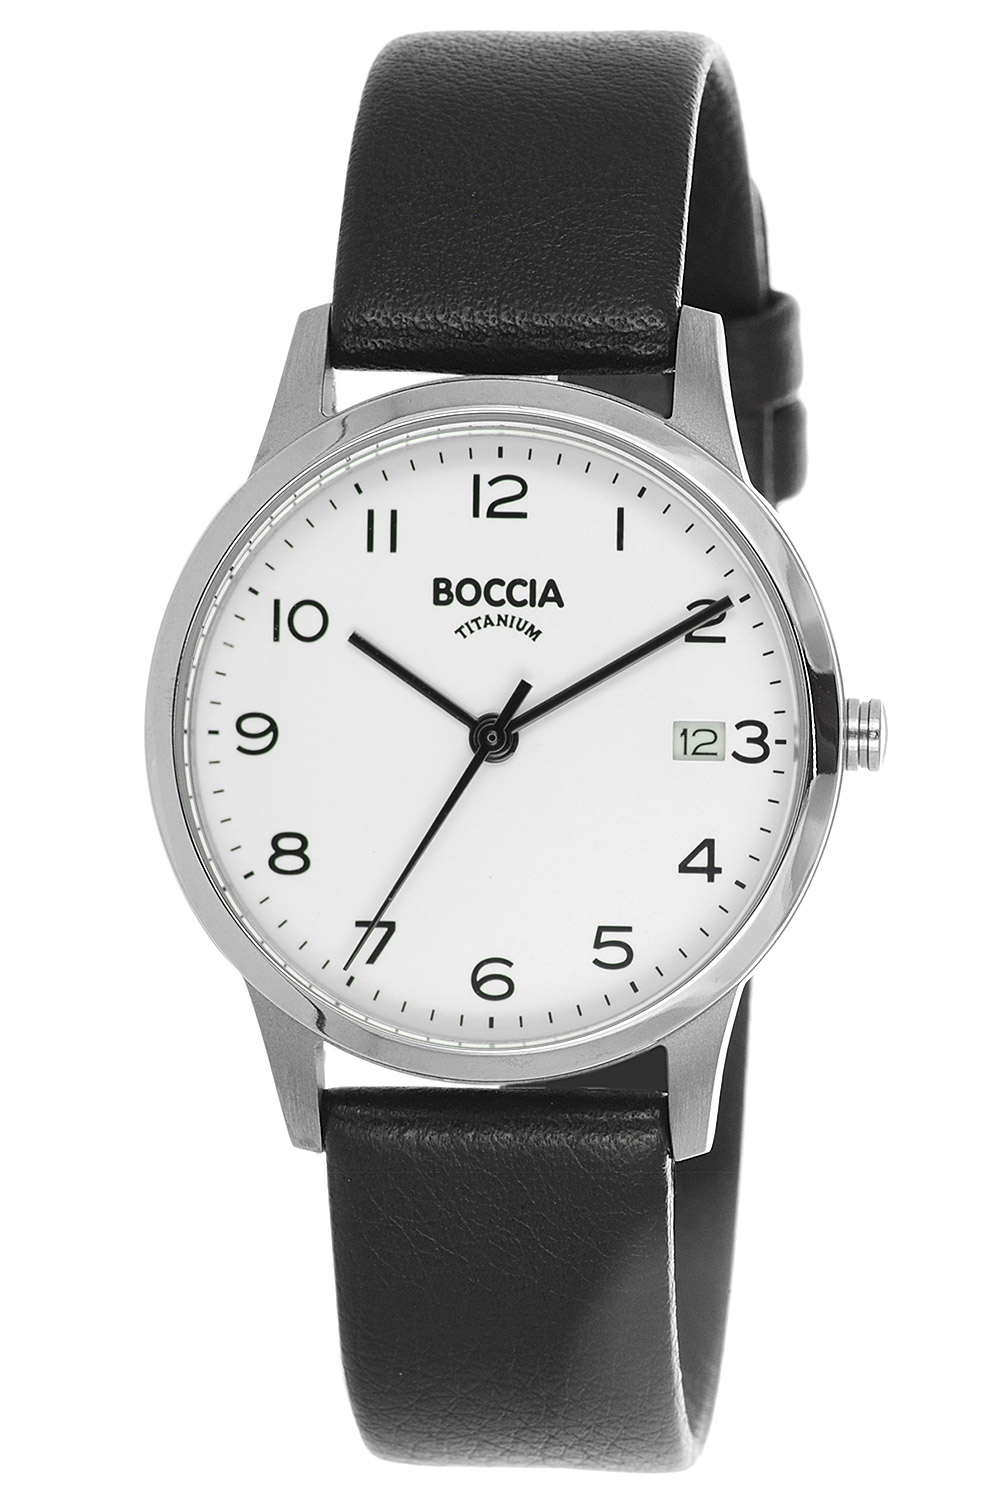 Boccia Damenuhren günstig kaufen Uhren Shop uhrcenter online •